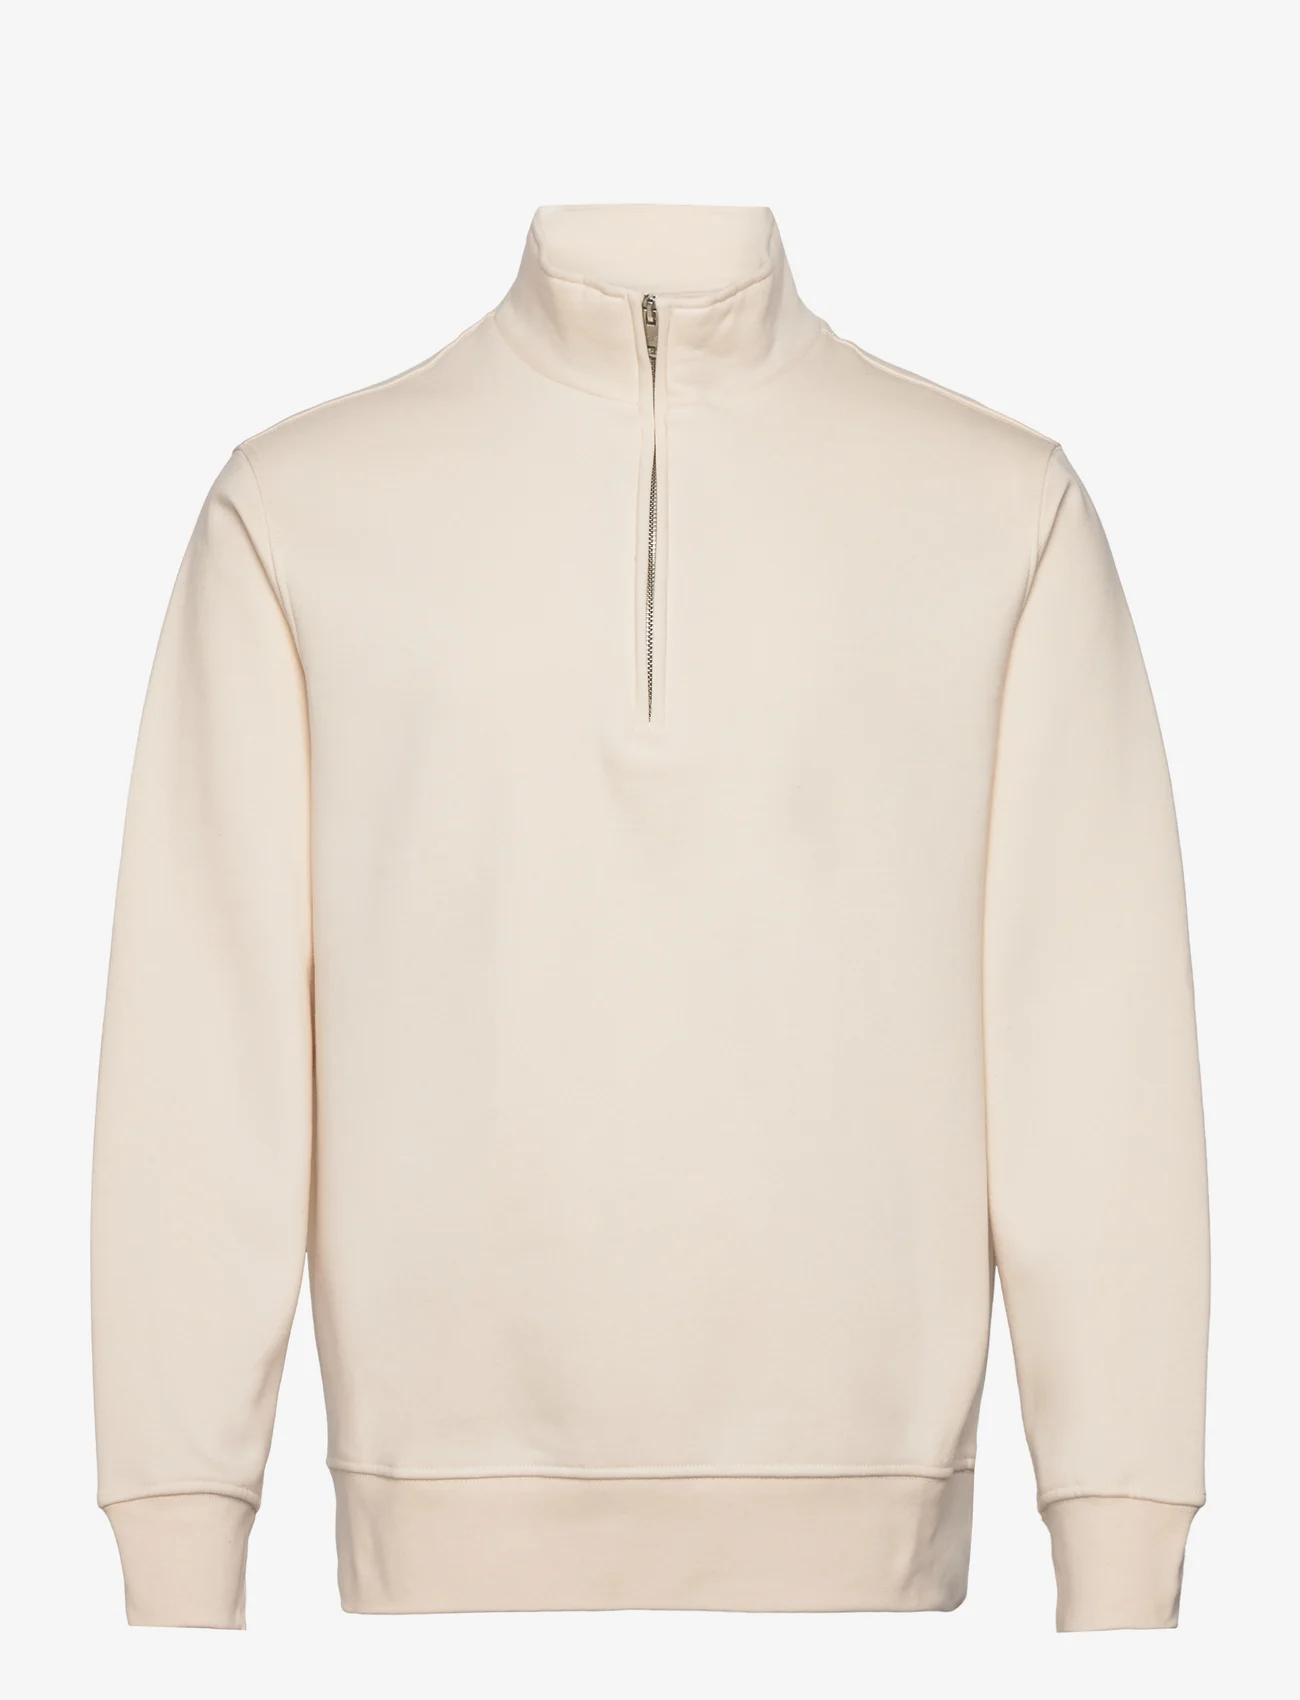 Mango - Cotton sweatshirt with zip neck - laveste priser - light beige - 0